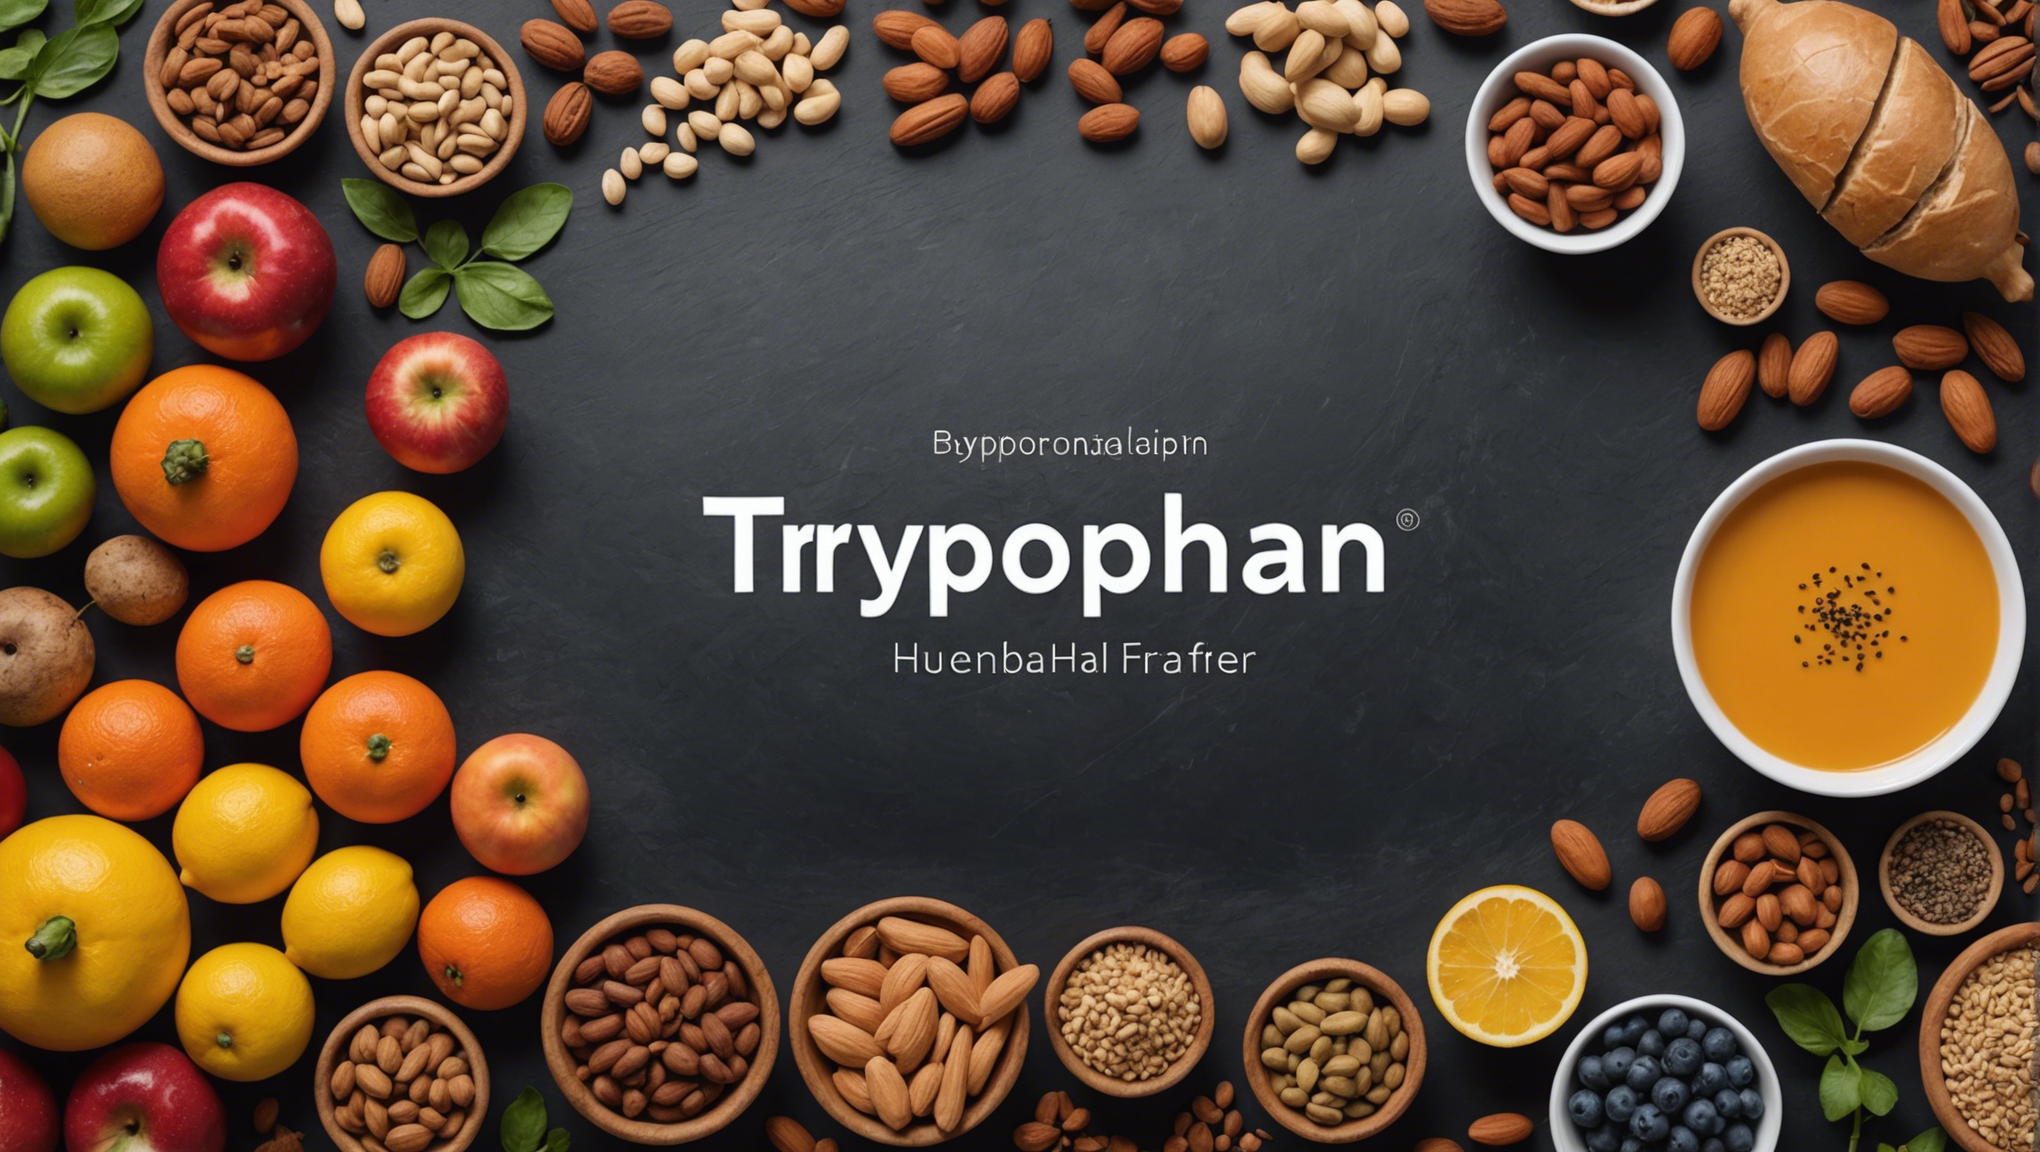 découvrez l'importance du tryptophane pour notre bien-être et son rôle essentiel en tant qu'aliment. apprenez-en plus sur cet acide aminé et ses bienfaits pour la santé.